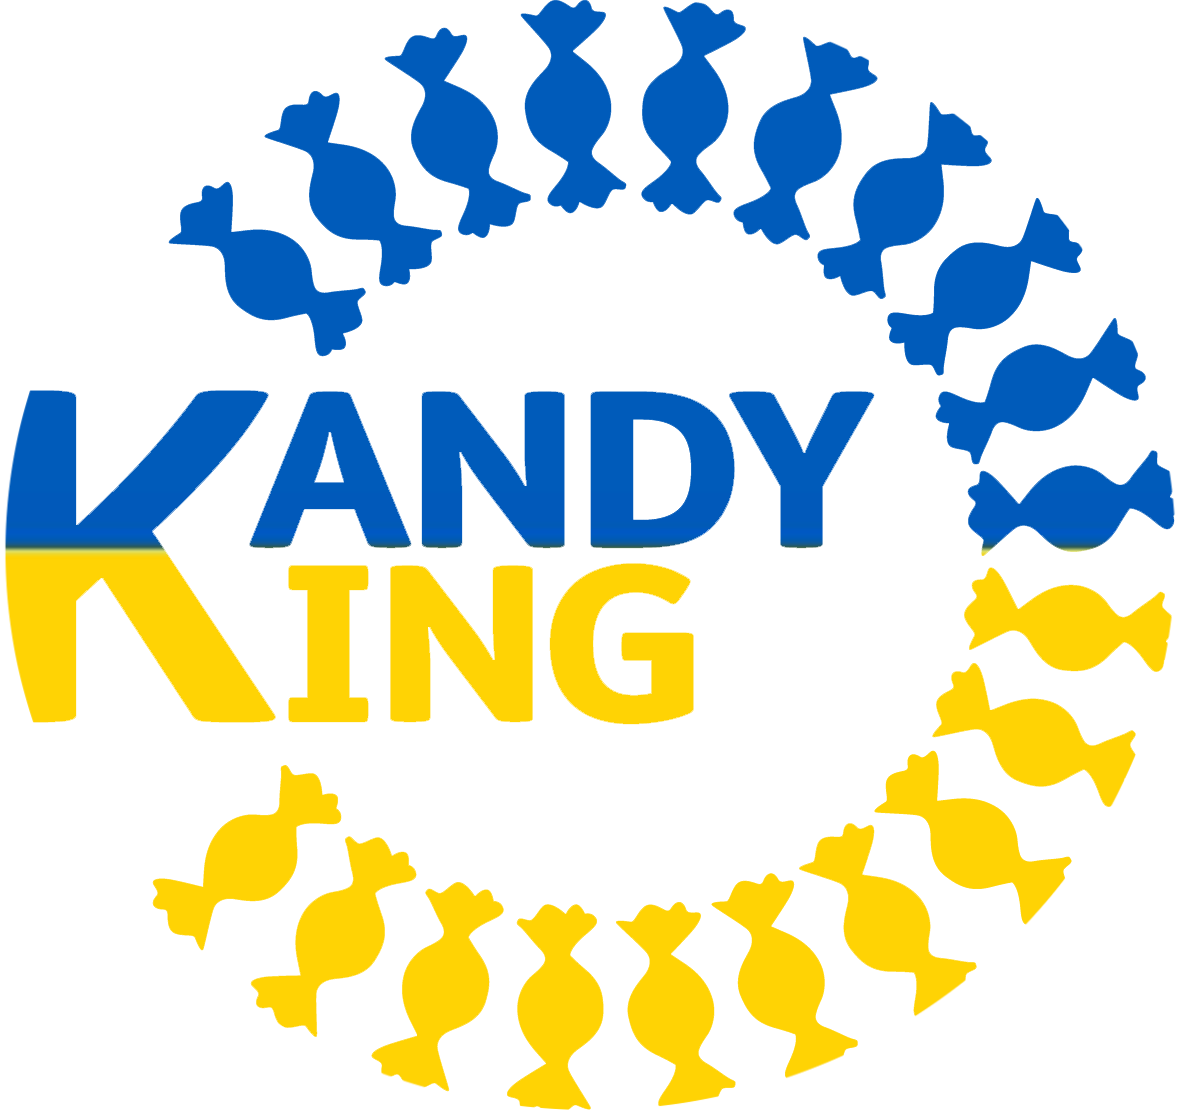 KANDY KING